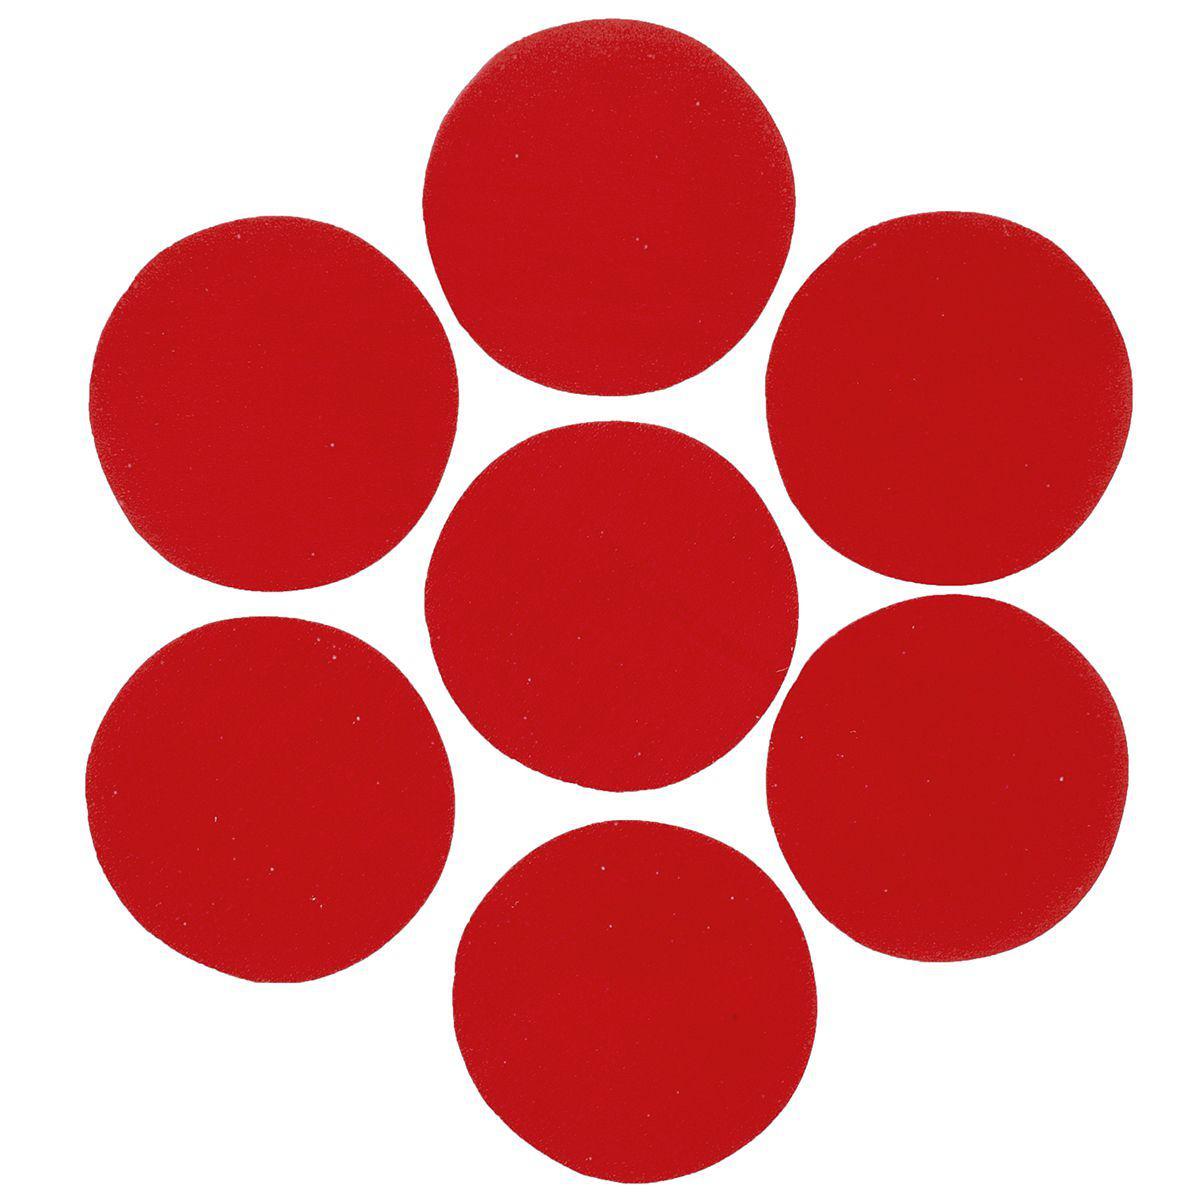 11 кружков красных. Круг красного цвета. Красные кружочки. Цветной круг. Красные круги раздаточный материал.